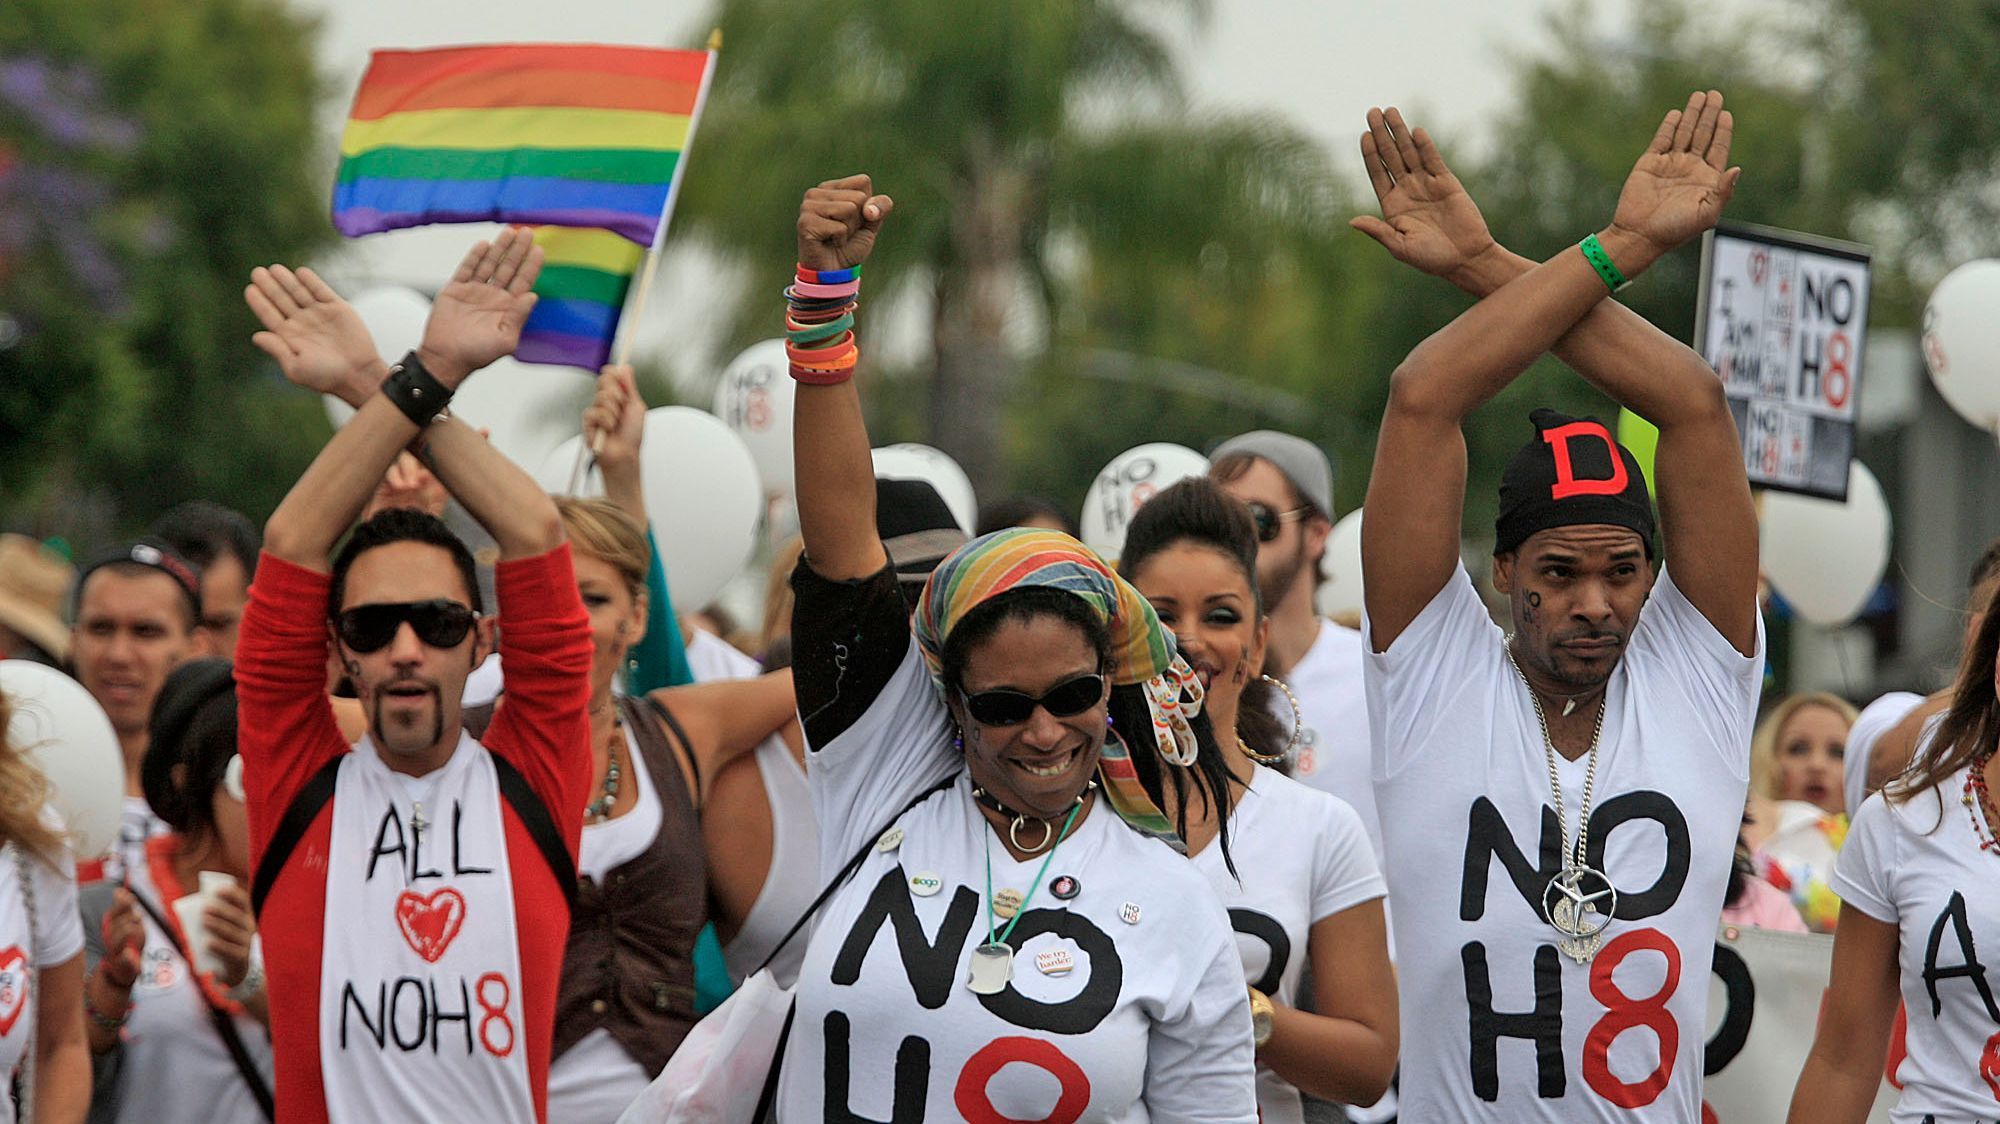 NOH8 participates during the LA Pride Parade on June 12, 2011.